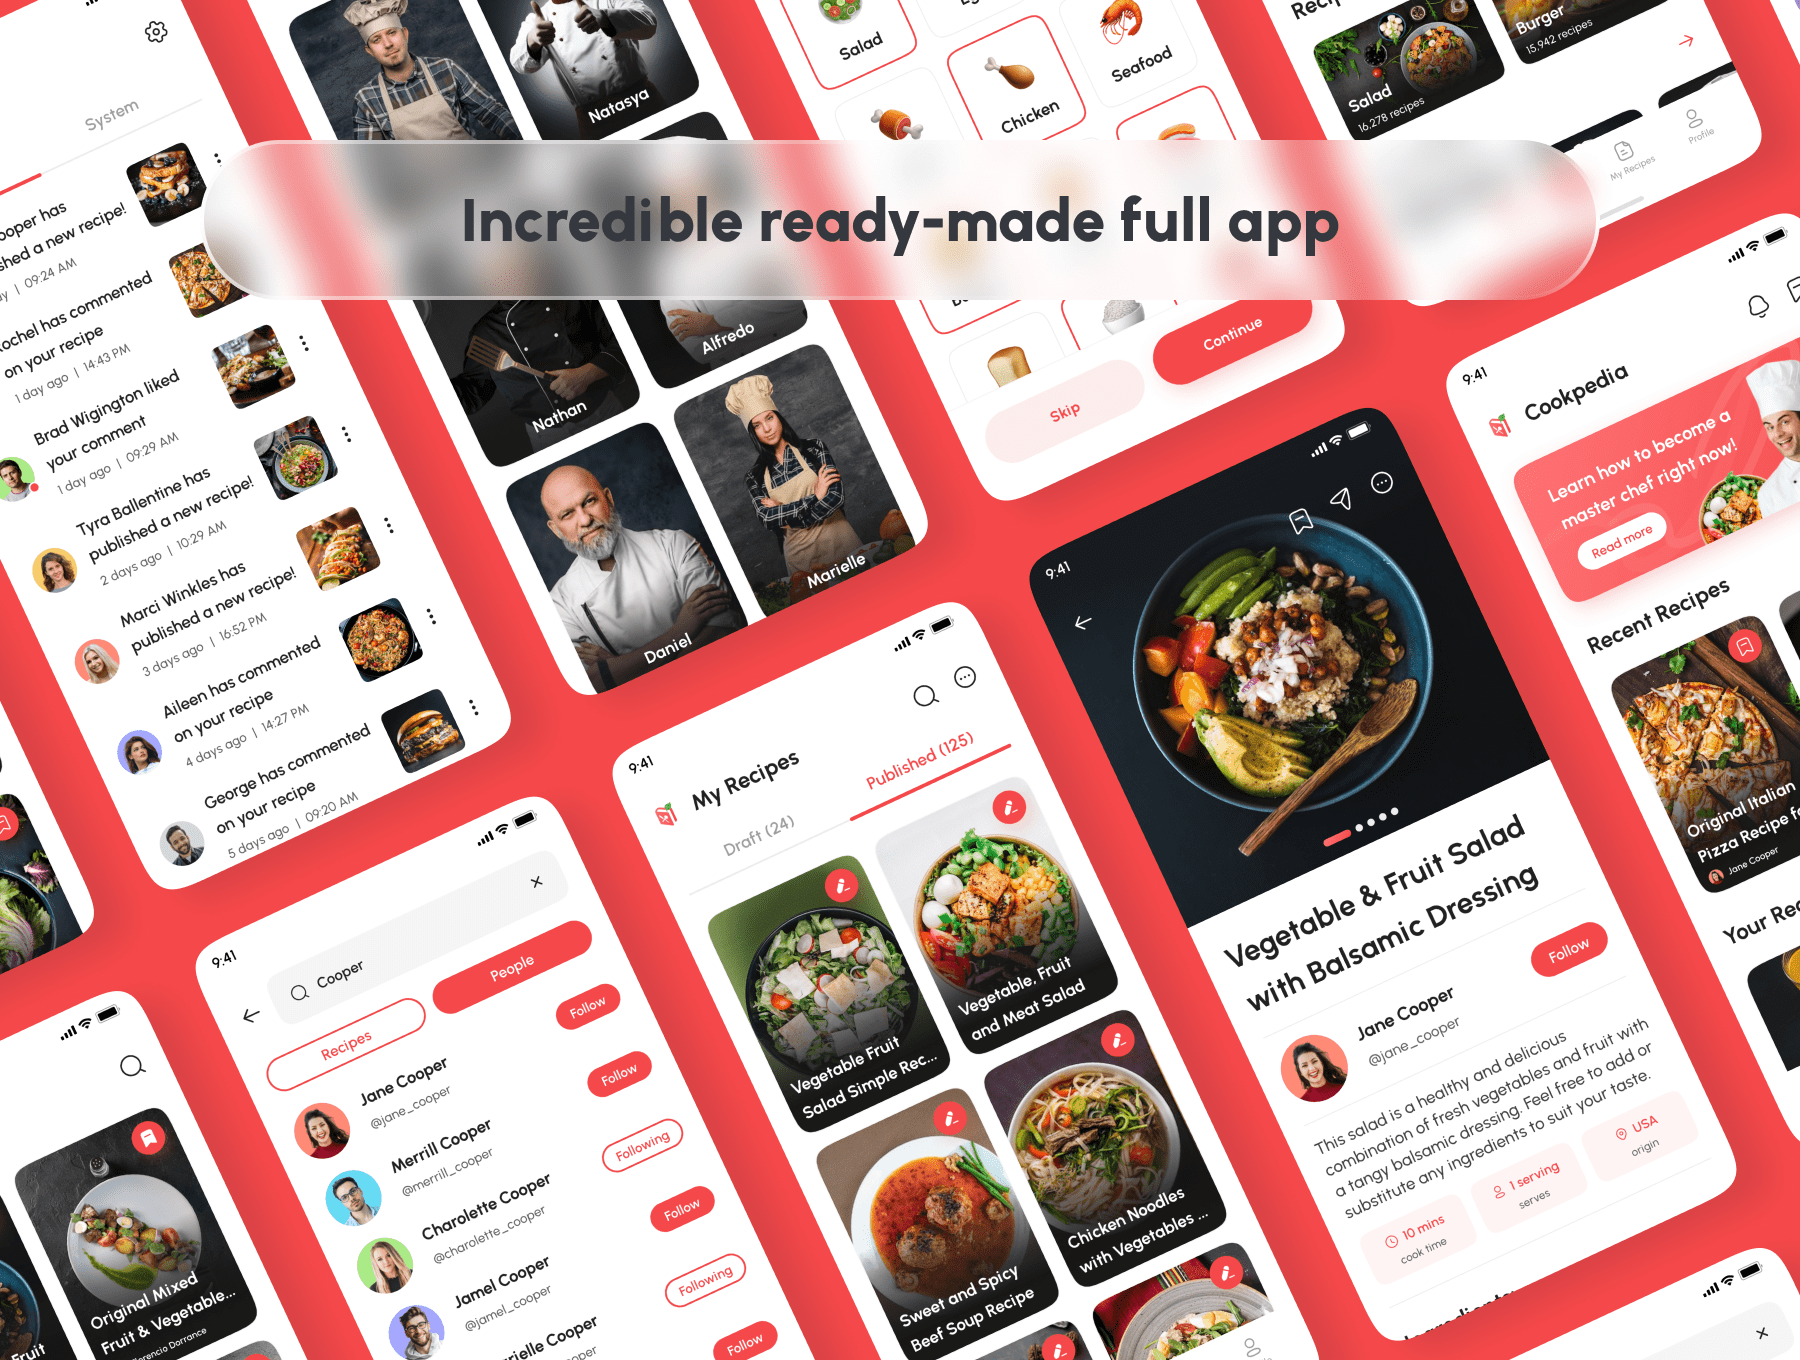 Cookpedia-食谱应用UI套件 Cookpedia - Food Recipe App UI Kit-UI/UX-到位啦UI